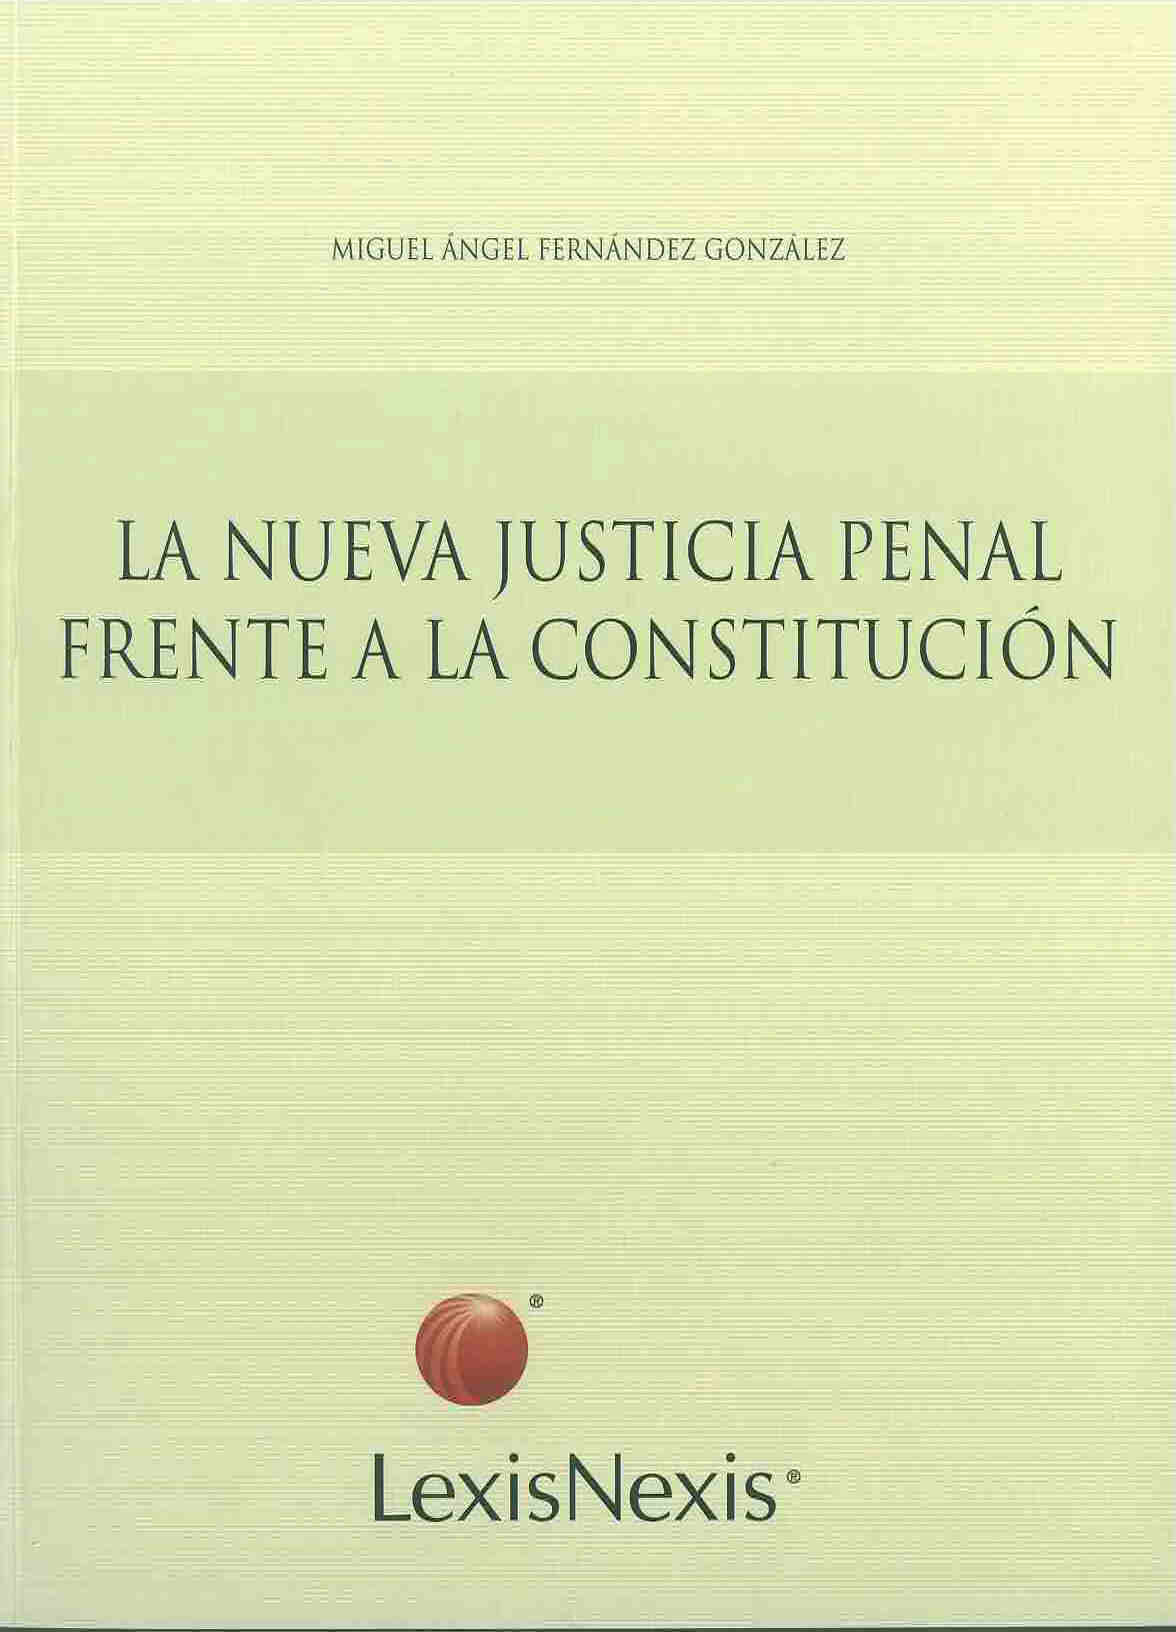 La nueva justicia penal frente a la constitución. Proyecto Fondecyt N° 1040637